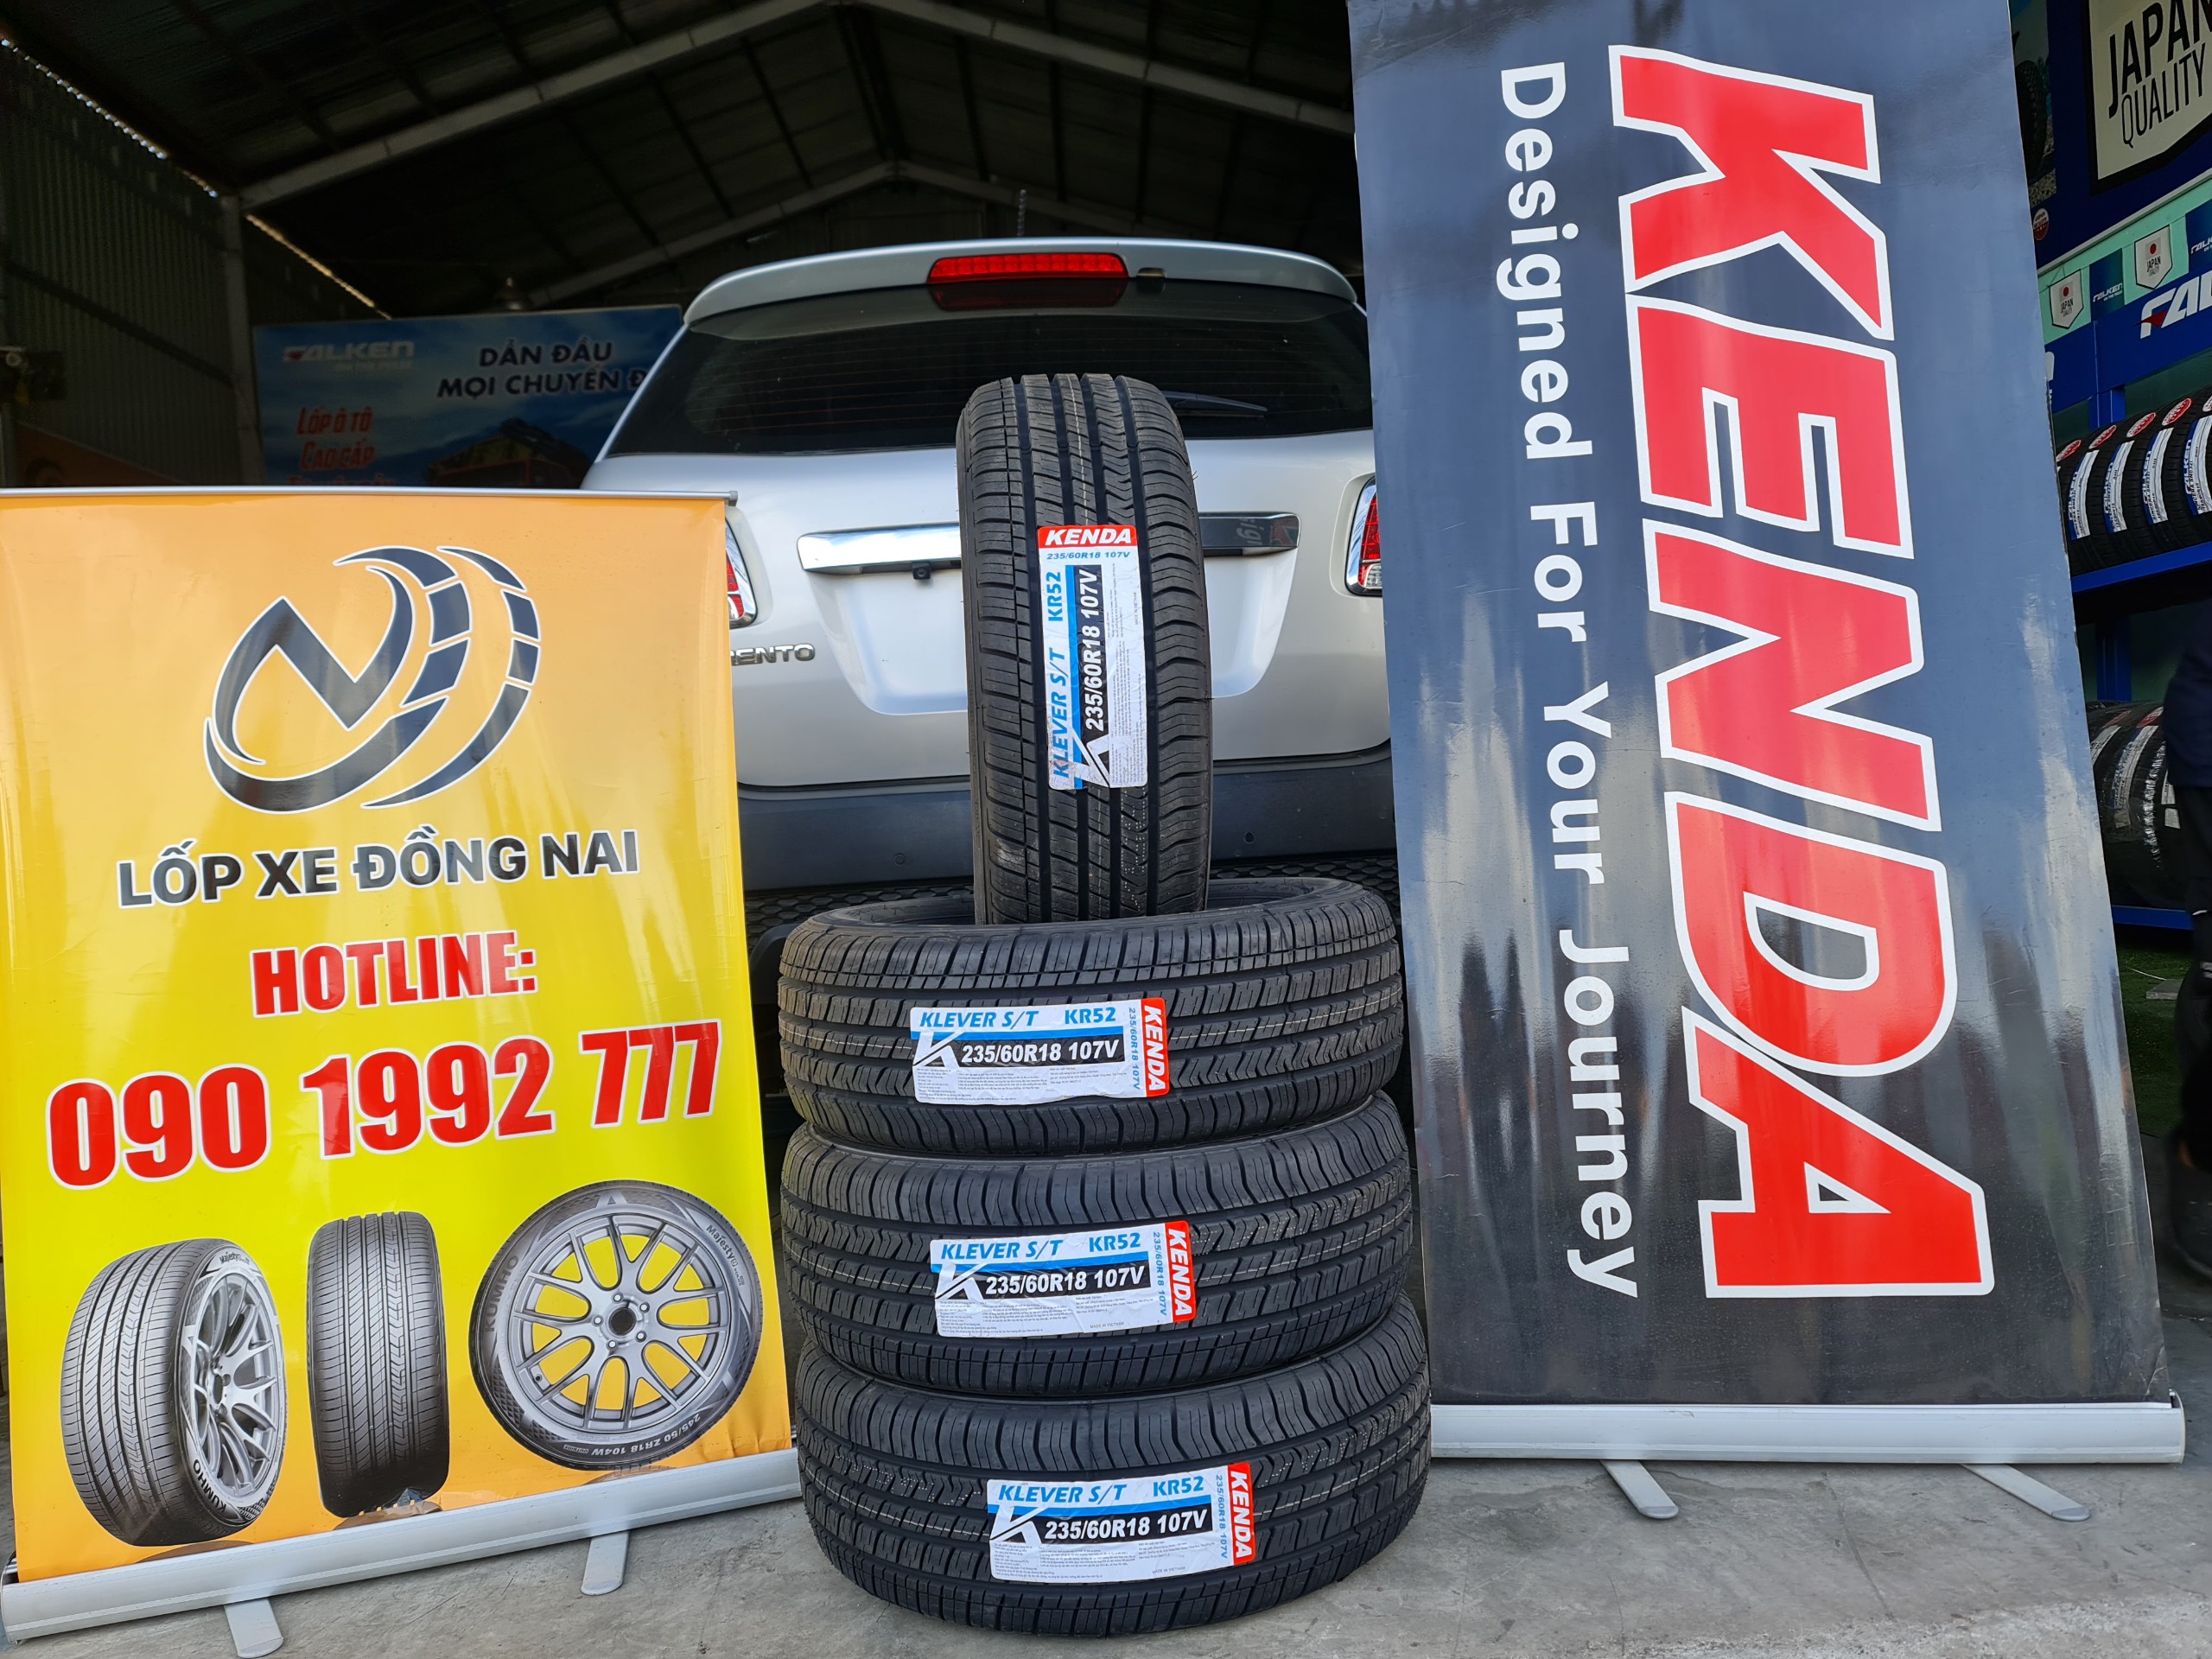 Review : Kia Sorento thay lốp 235/60R18 Kenda Klever S/T KR52